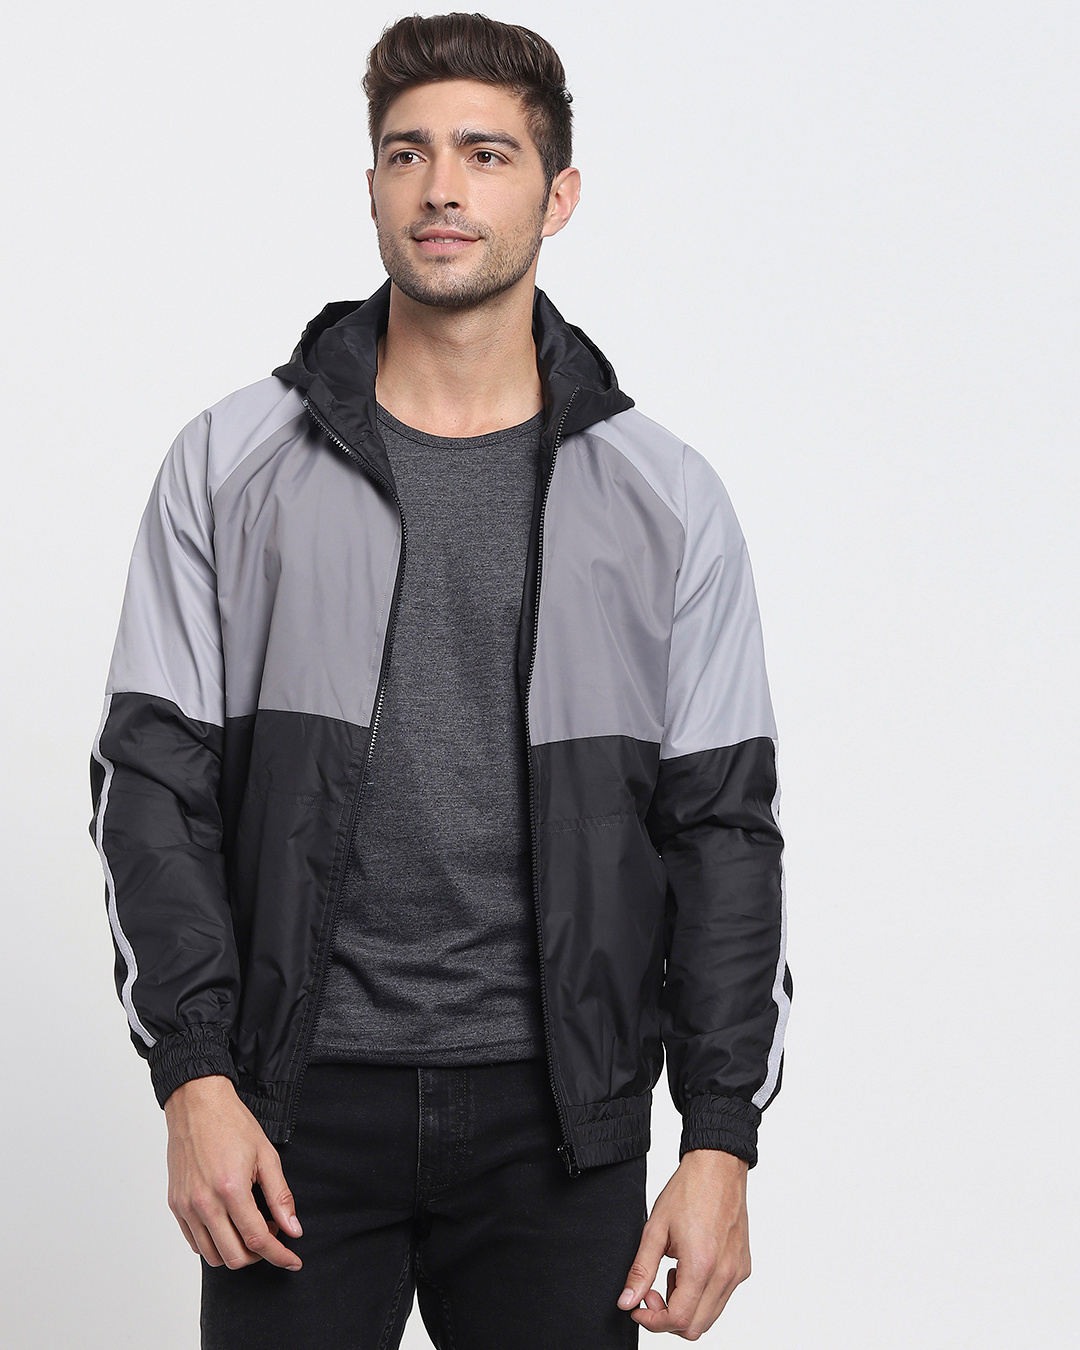 Buy Men's Grey & Black Colorblock Windcheater Jacket Online at Bewakoof